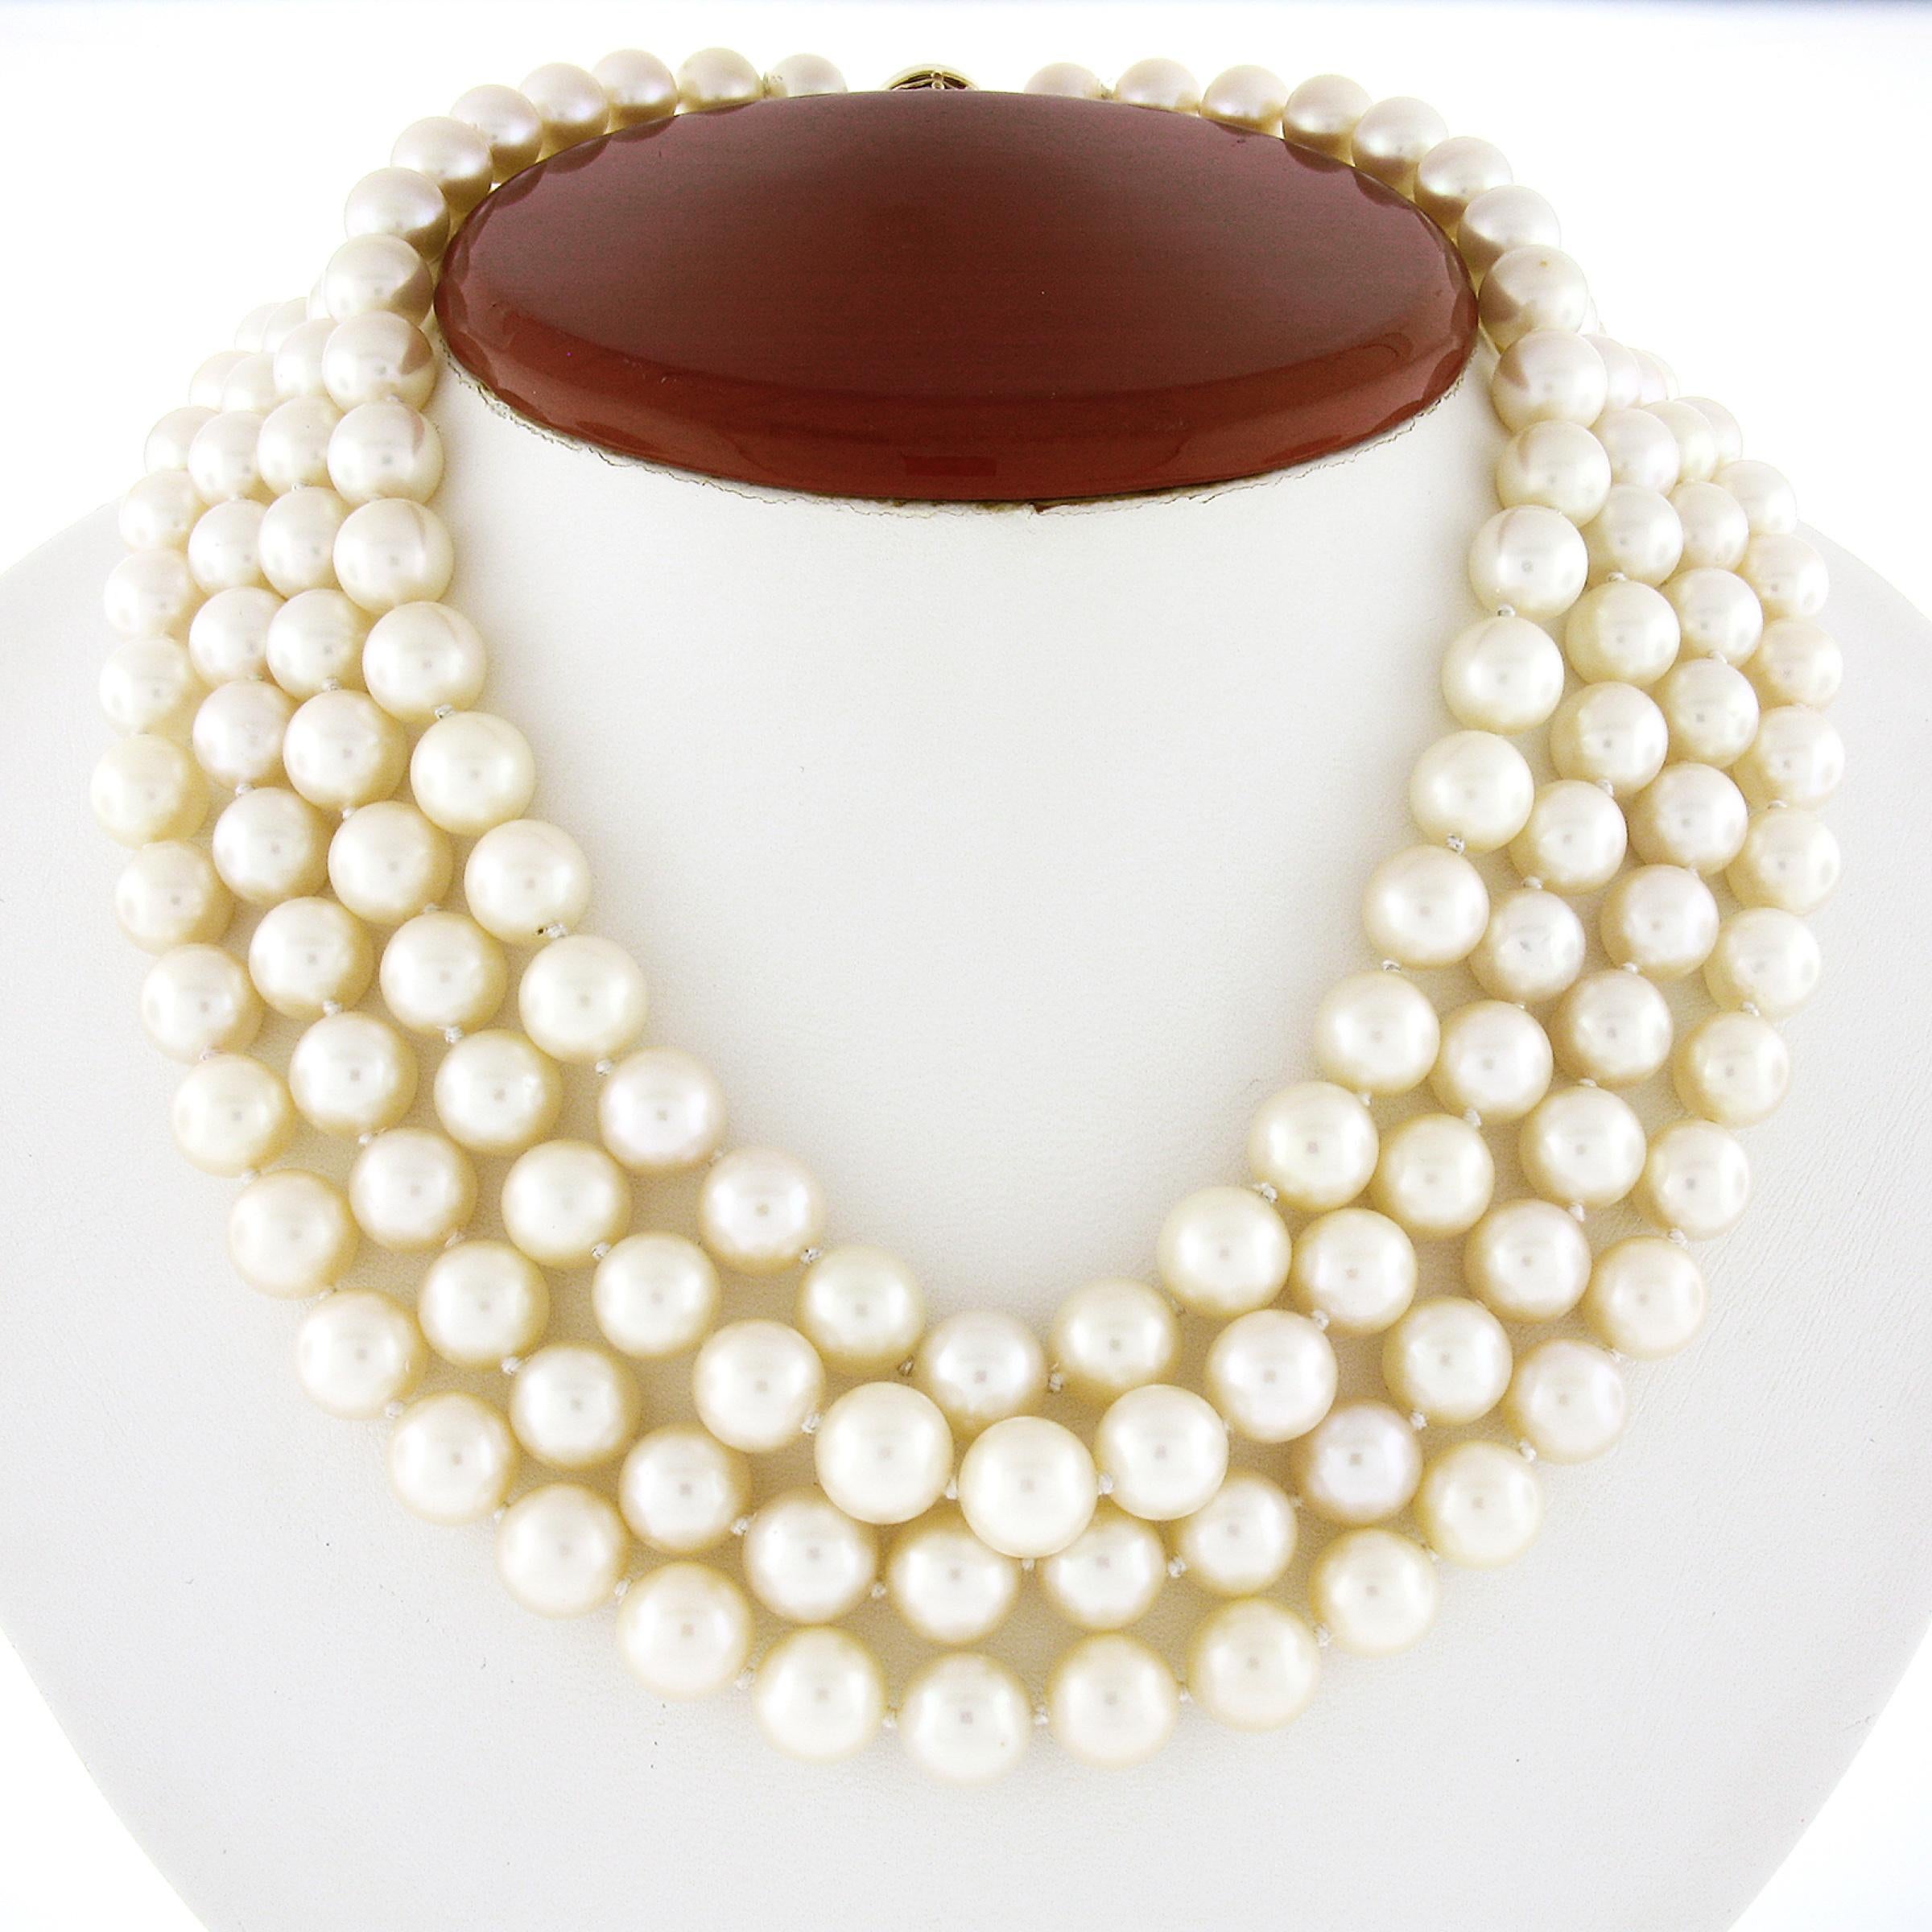 Ce magnifique collier vintage a été conçu par Tambetti et comporte 4 rangs de perles de culture qui sont élégamment enfilés. Ces magnifiques perles, dont la taille varie légèrement de 8,5 à 9,5 mm, la plus grosse se trouvant au centre du collier,